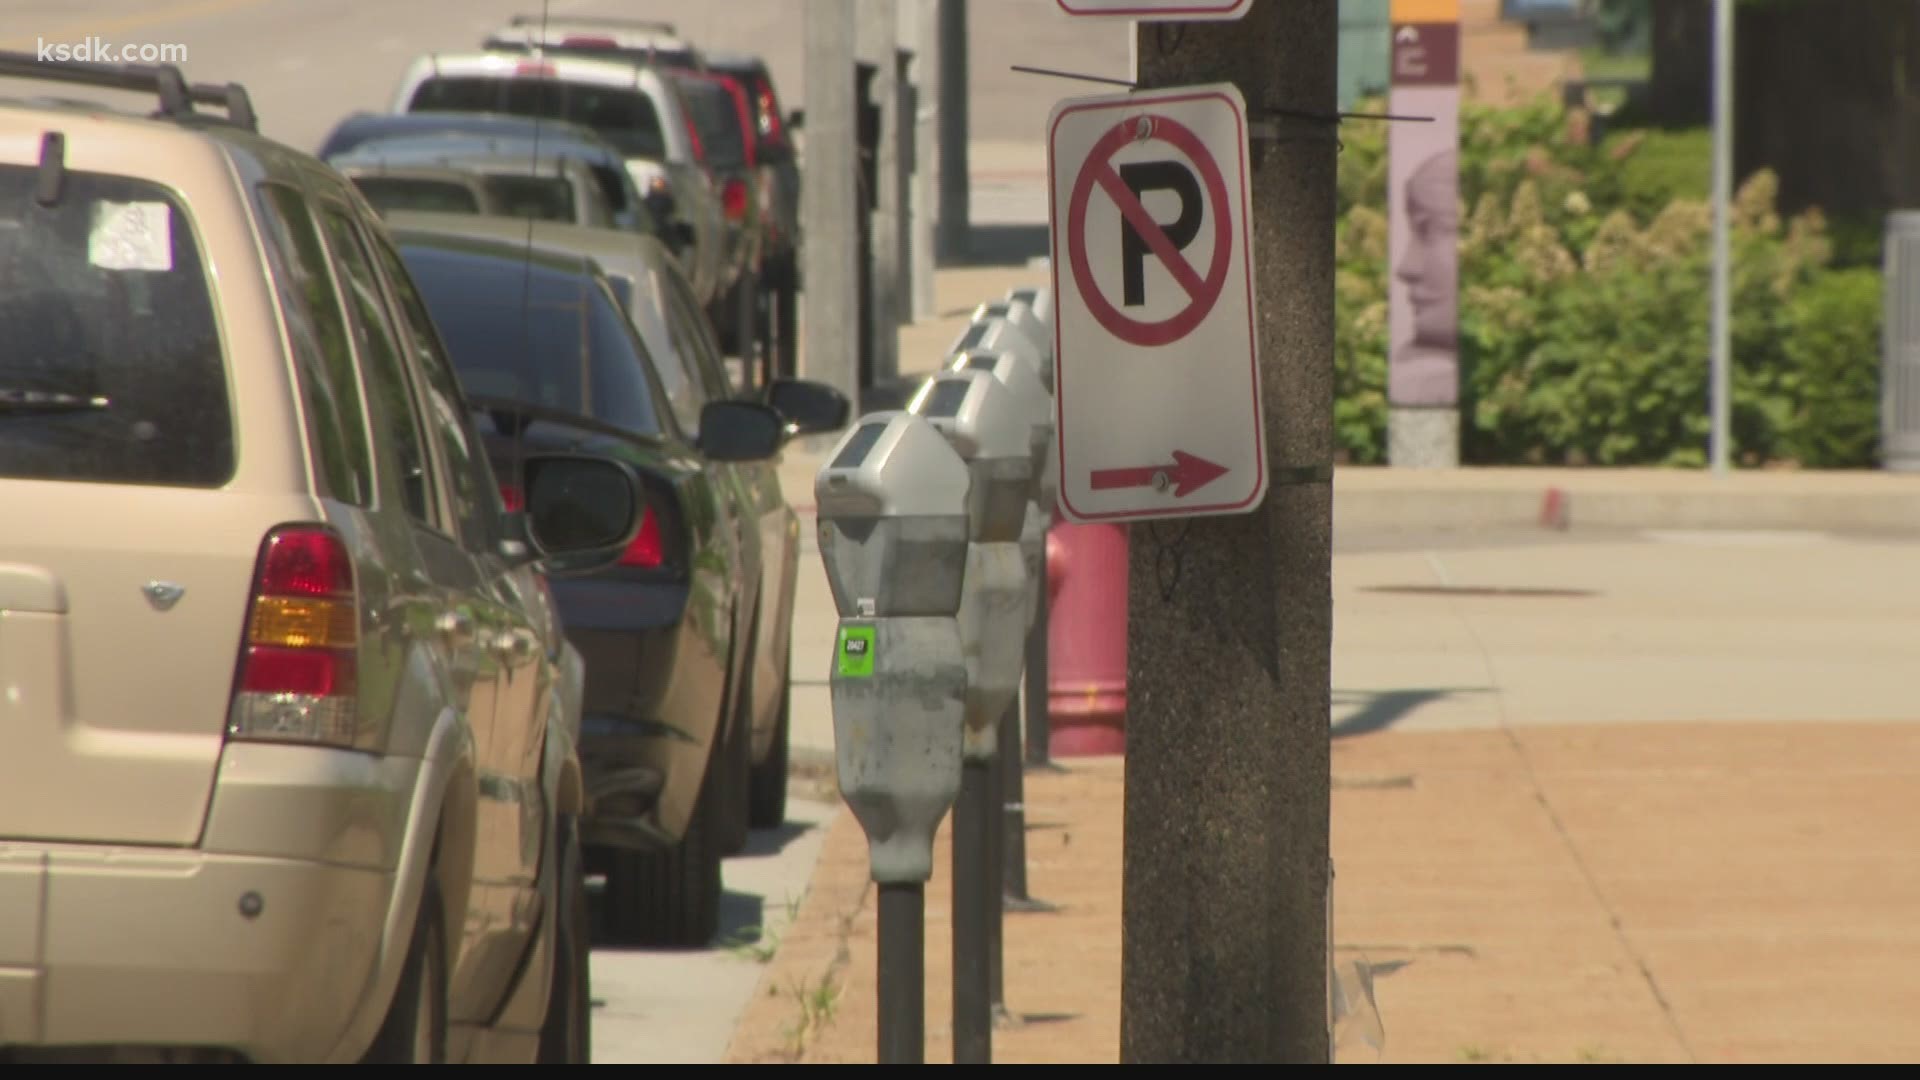 St. Louis aldermen vote to force Treasurer to answer questions about $7 million parking enforcement contract